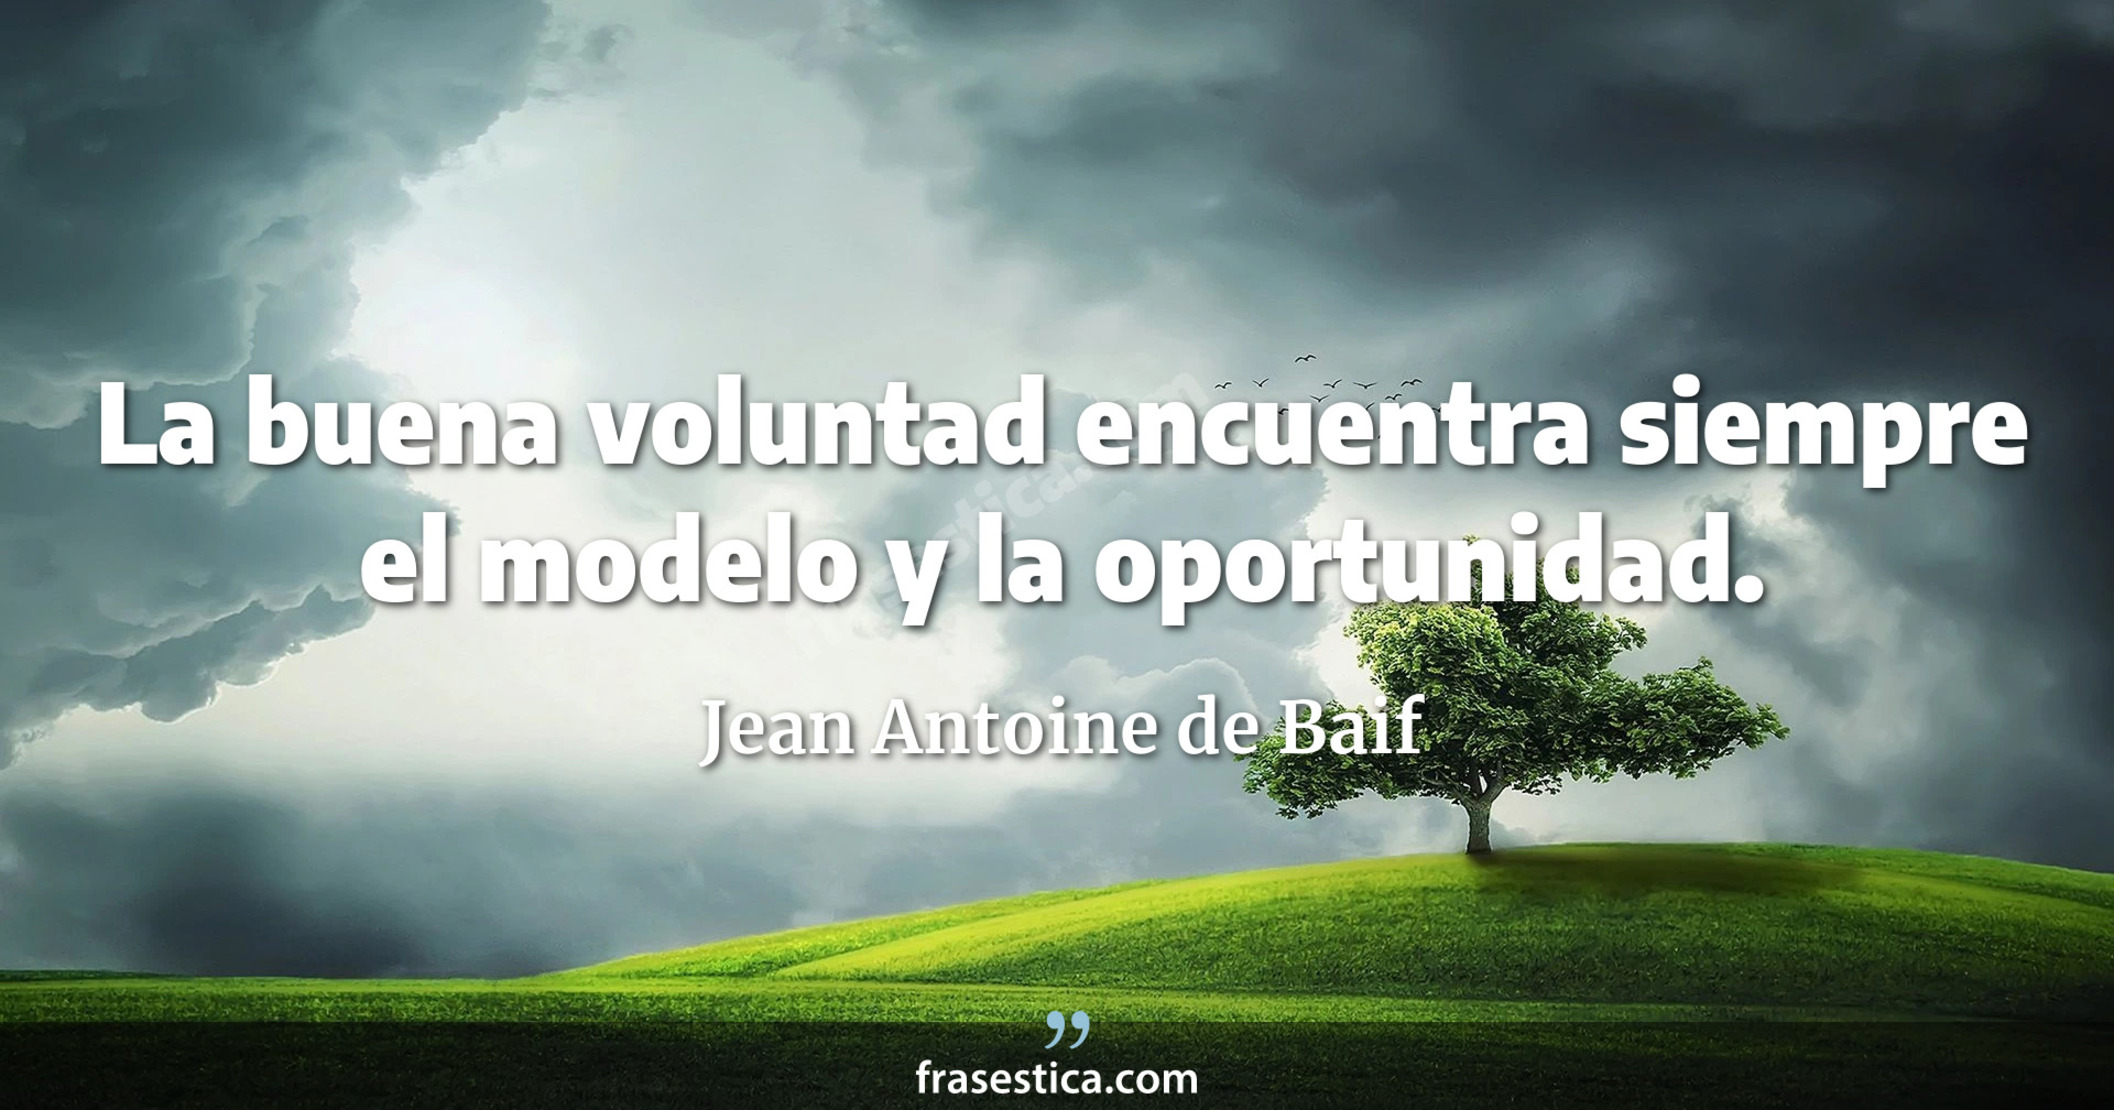 La buena voluntad encuentra siempre el modelo y la oportunidad. - Jean Antoine de Baif